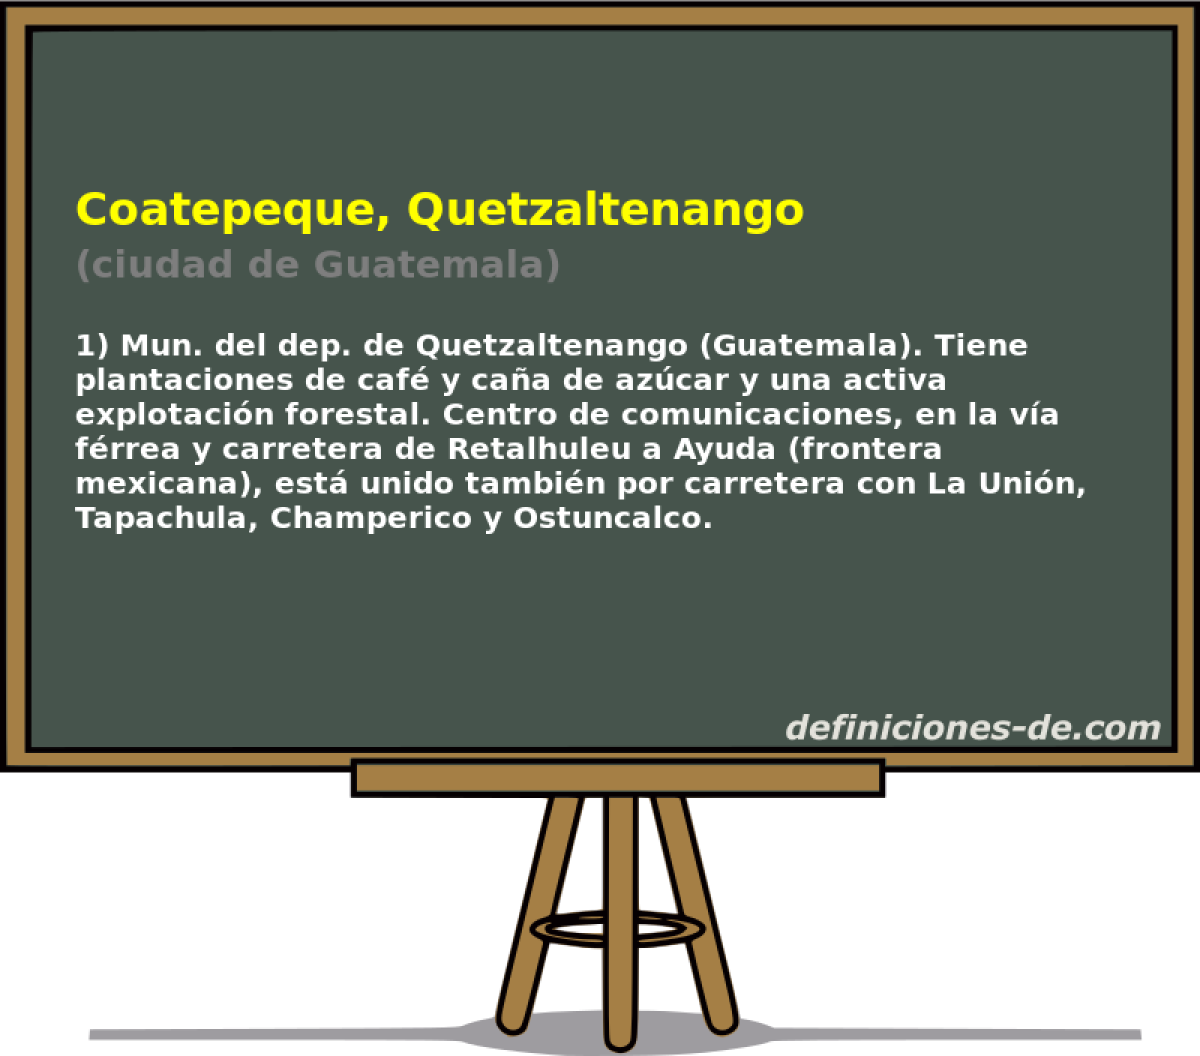 Coatepeque, Quetzaltenango (ciudad de Guatemala)